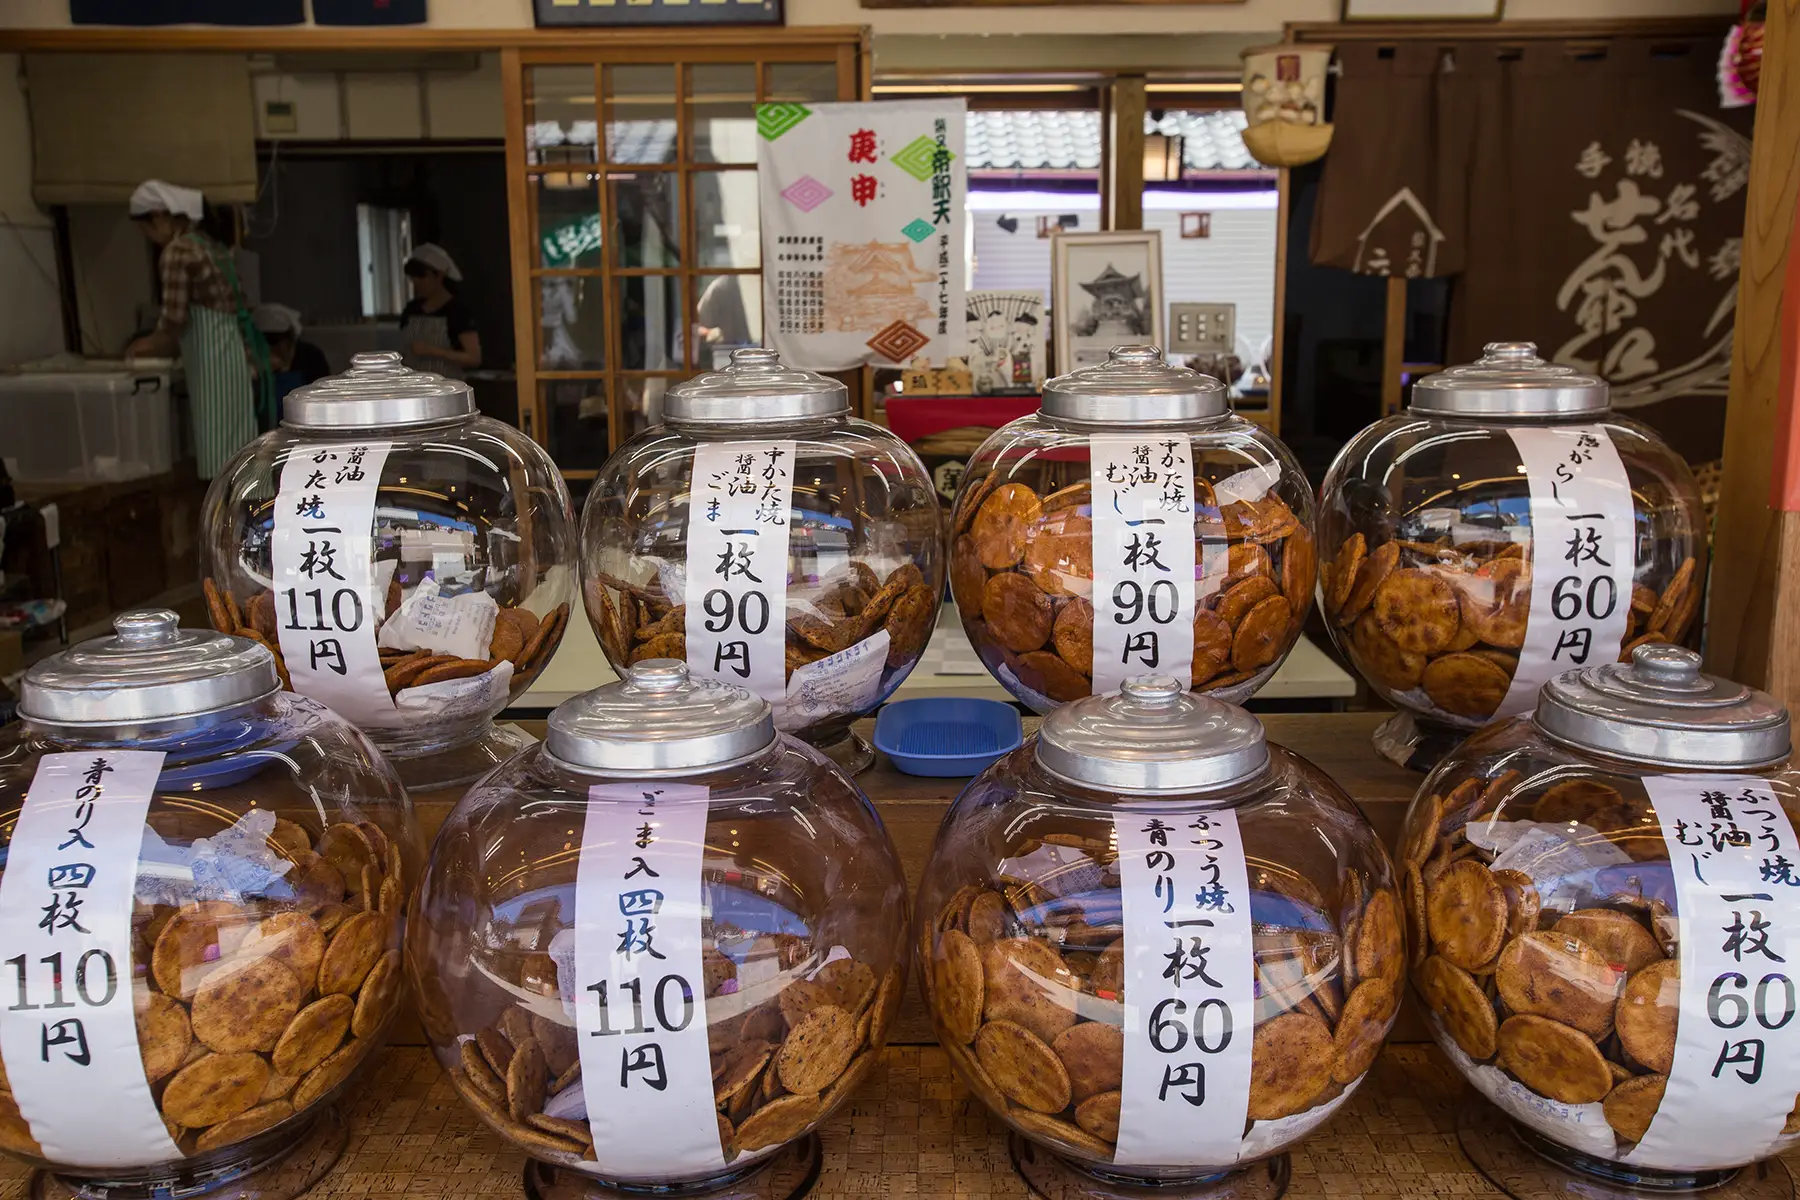 Large jars of senbei for sale. 